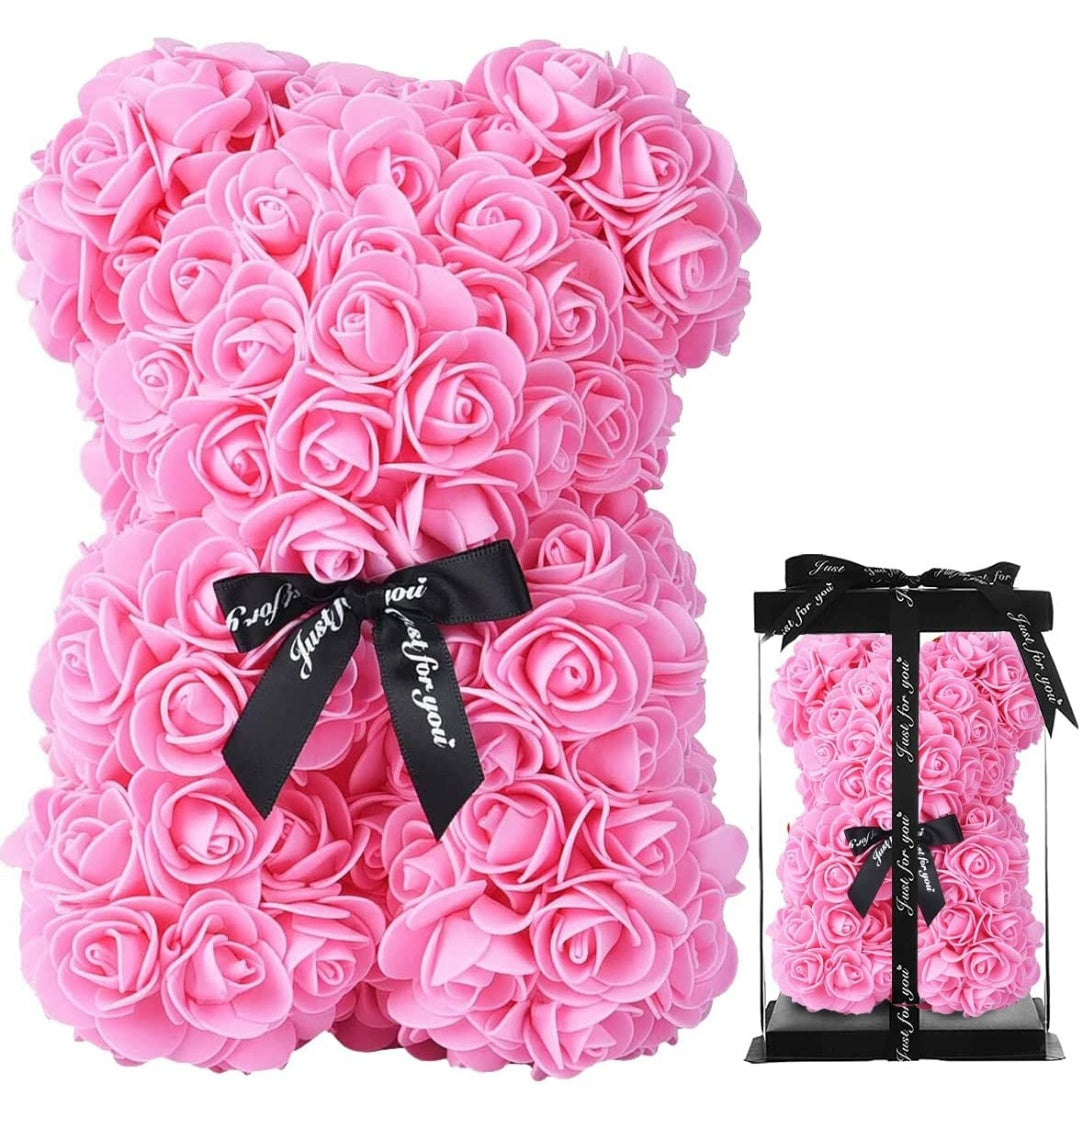 Foam rose teddy bear in box